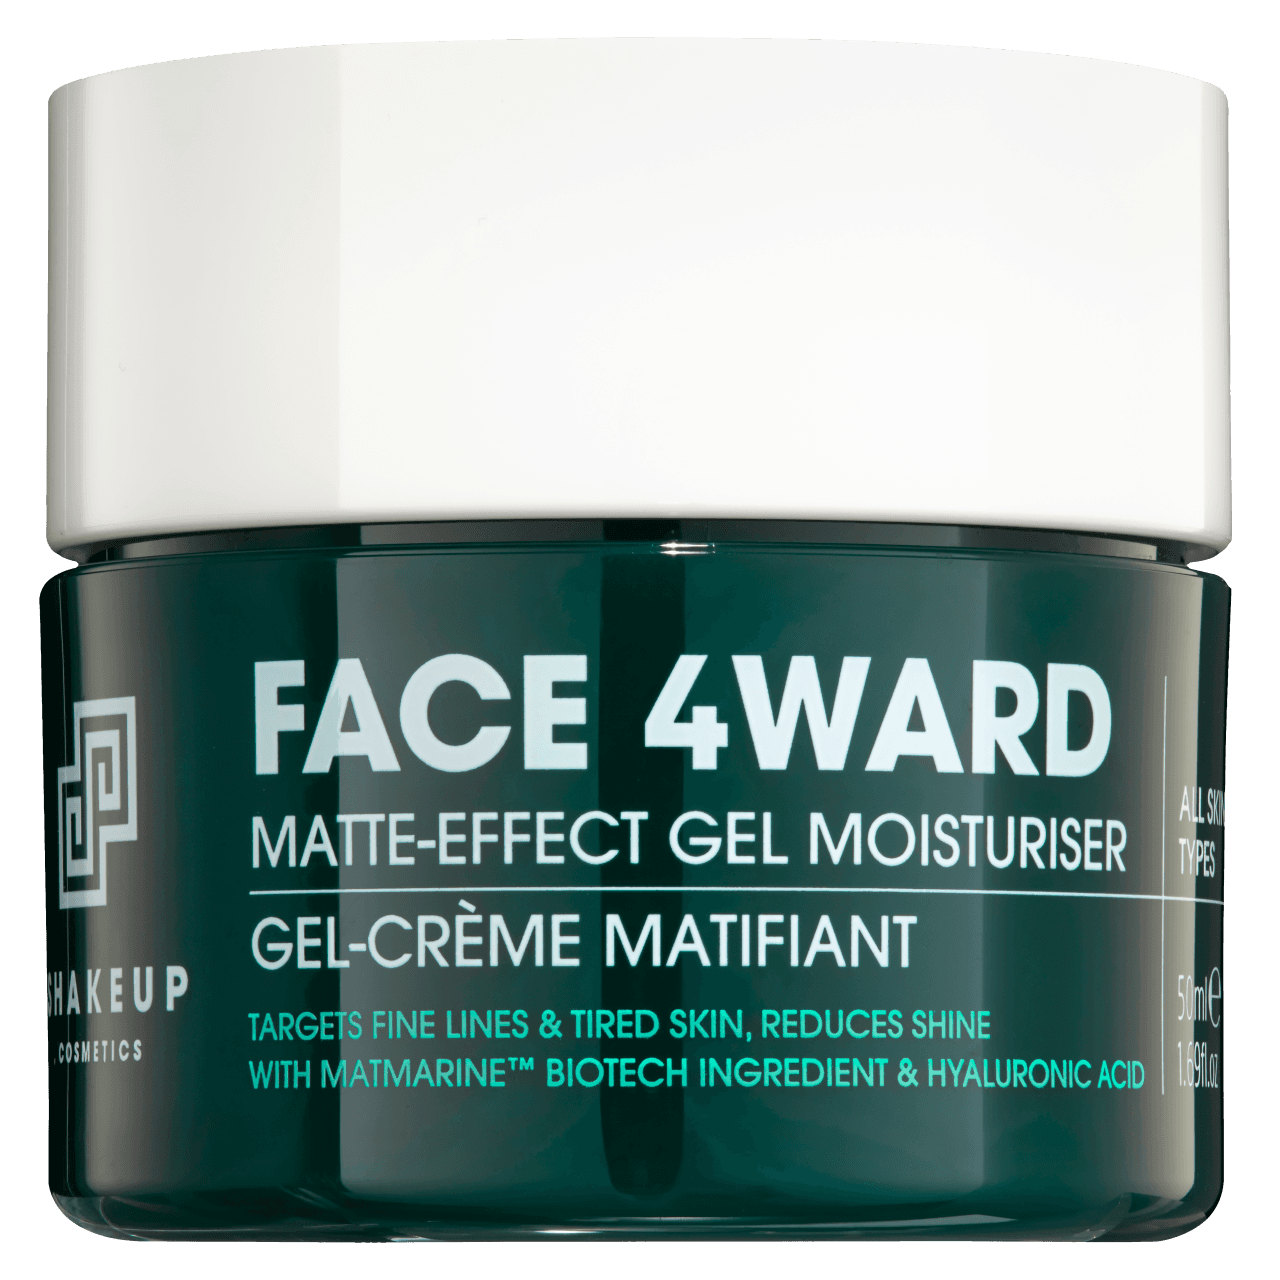 Face 4ward - Matte- Effect Gel Moisturiser